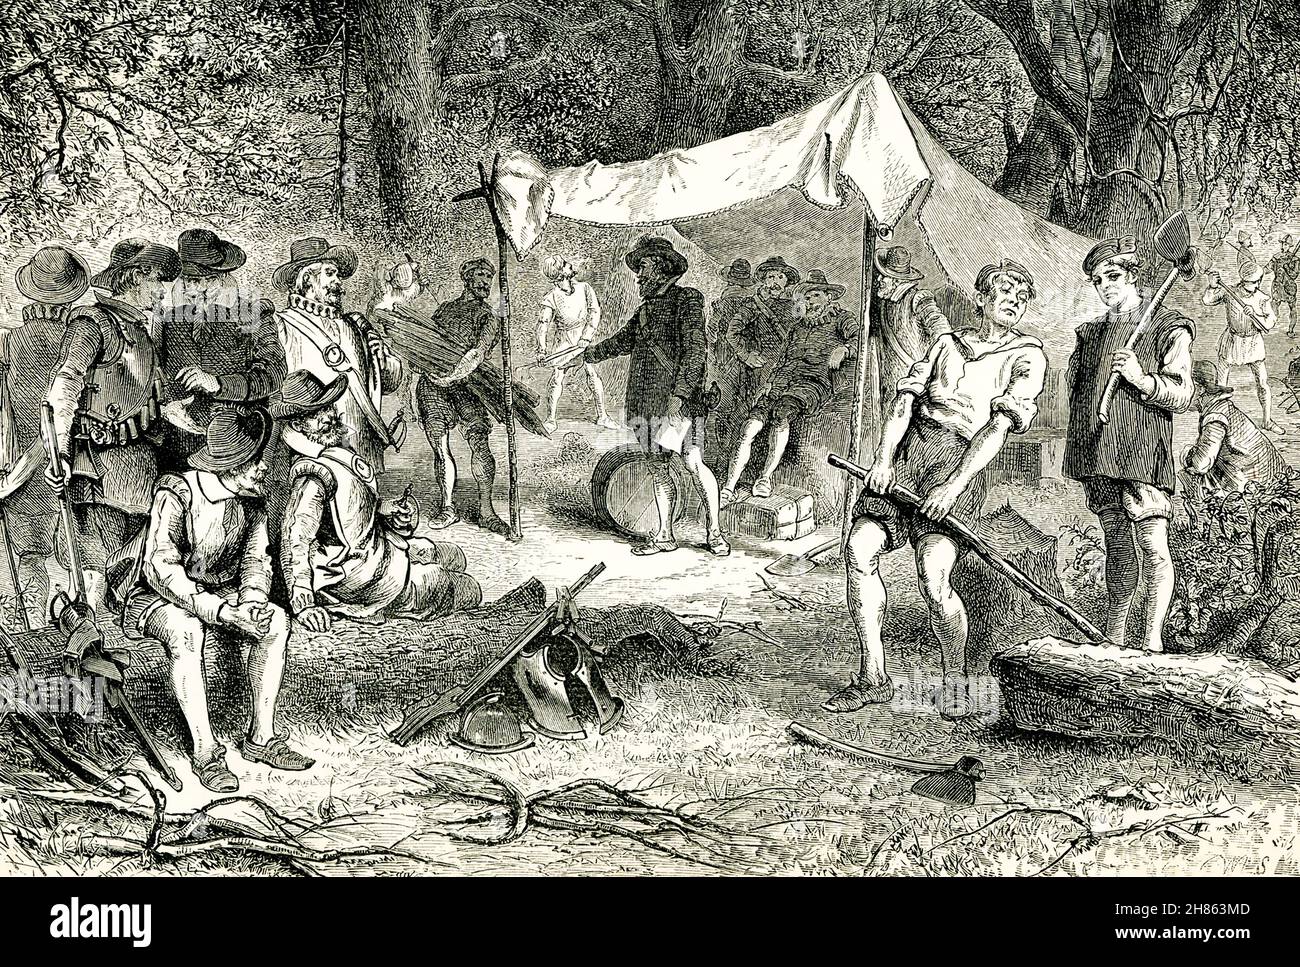 Jamestown, Virginia, fue el primer asentamiento inglés permanente en América. Fue fundada el 13 de mayo de 1607. Esta ilustración de finales de 1890 muestra a los colonos el primer día de la colonia, según lo que se sabía y entendía de la colonia a finales de 1800s. Foto de stock